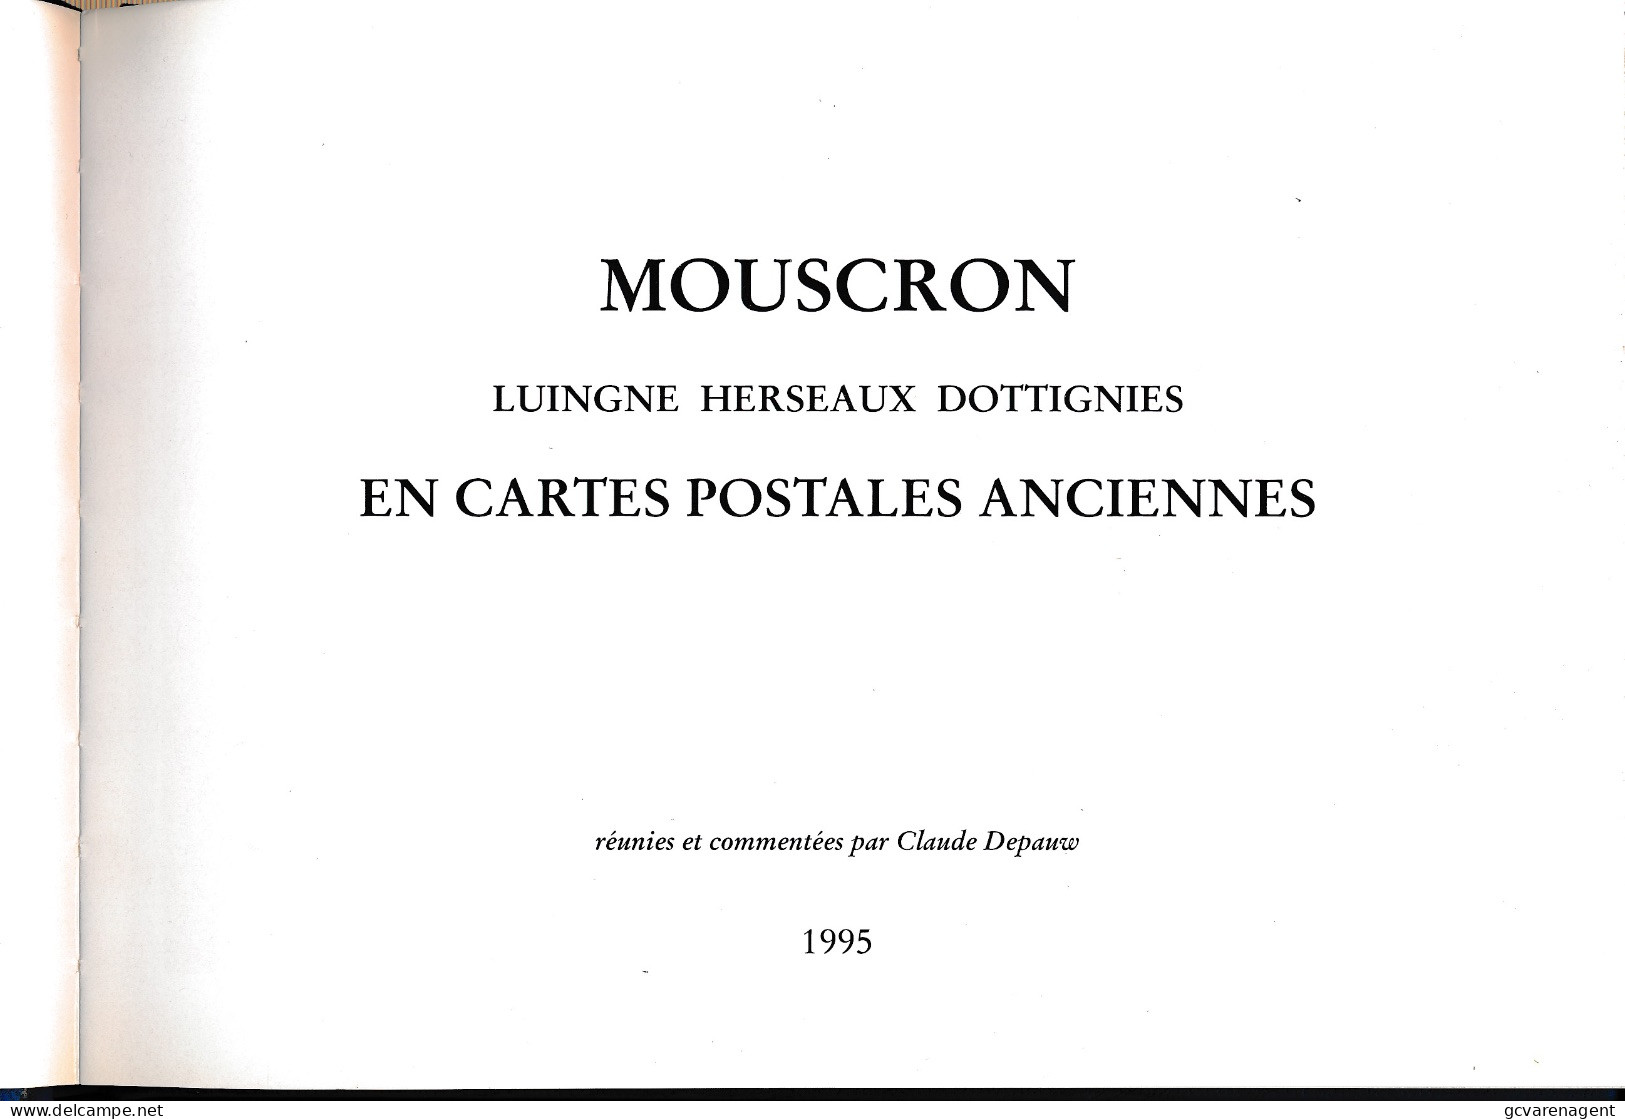 MOUSCRON  LUIGNE HERSEAUX DOTTIGNIES   TRES BON ETAT  22 X 16 X 1.5 CM   VOIR SCANS - Mouscron - Moeskroen